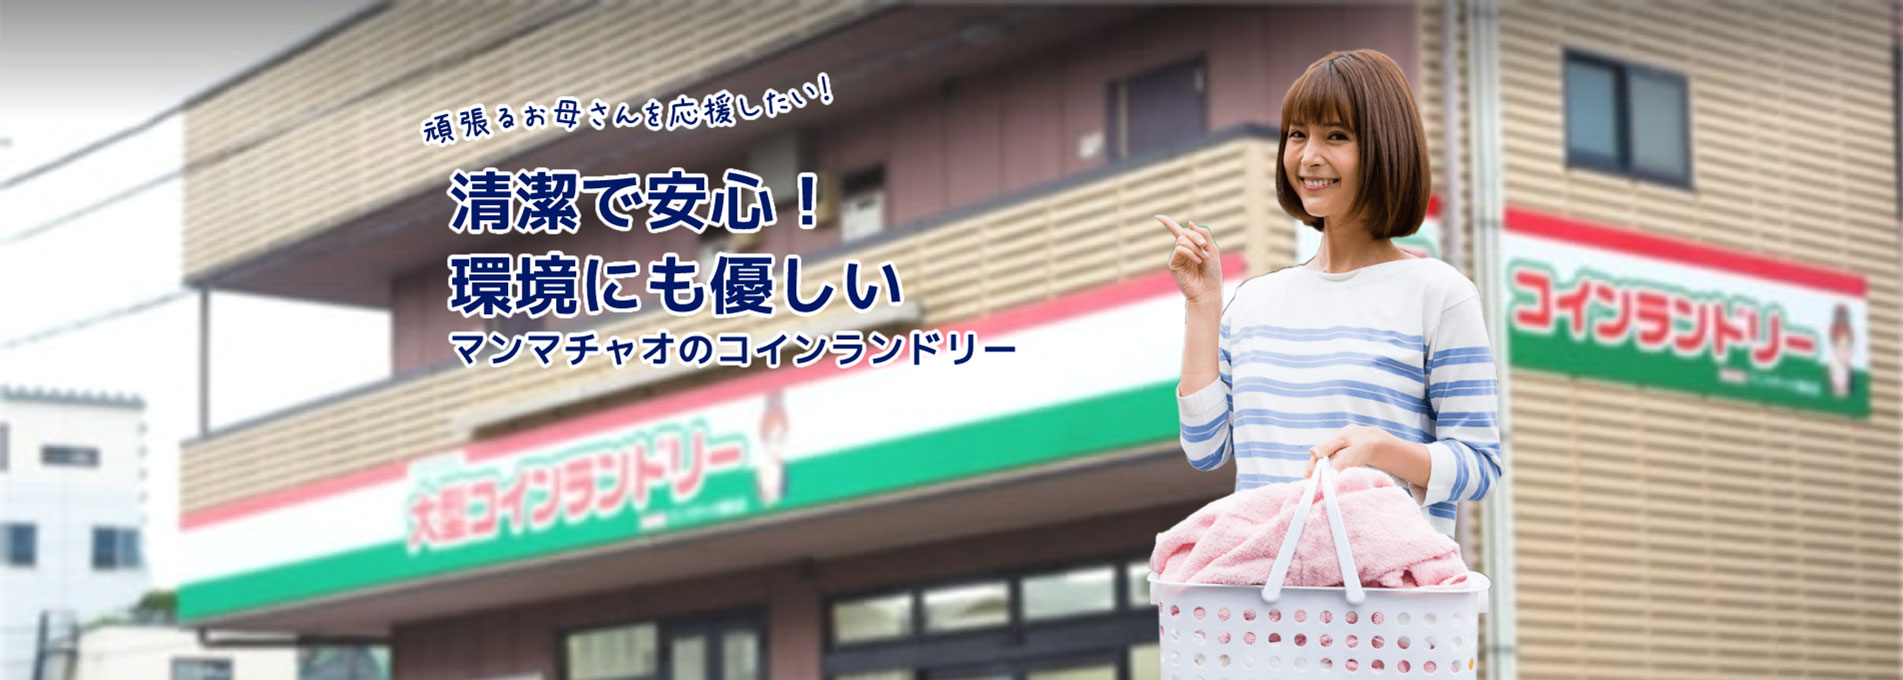 コインランドリーのマンマチャオ 日本全国580店舗 チャオネット